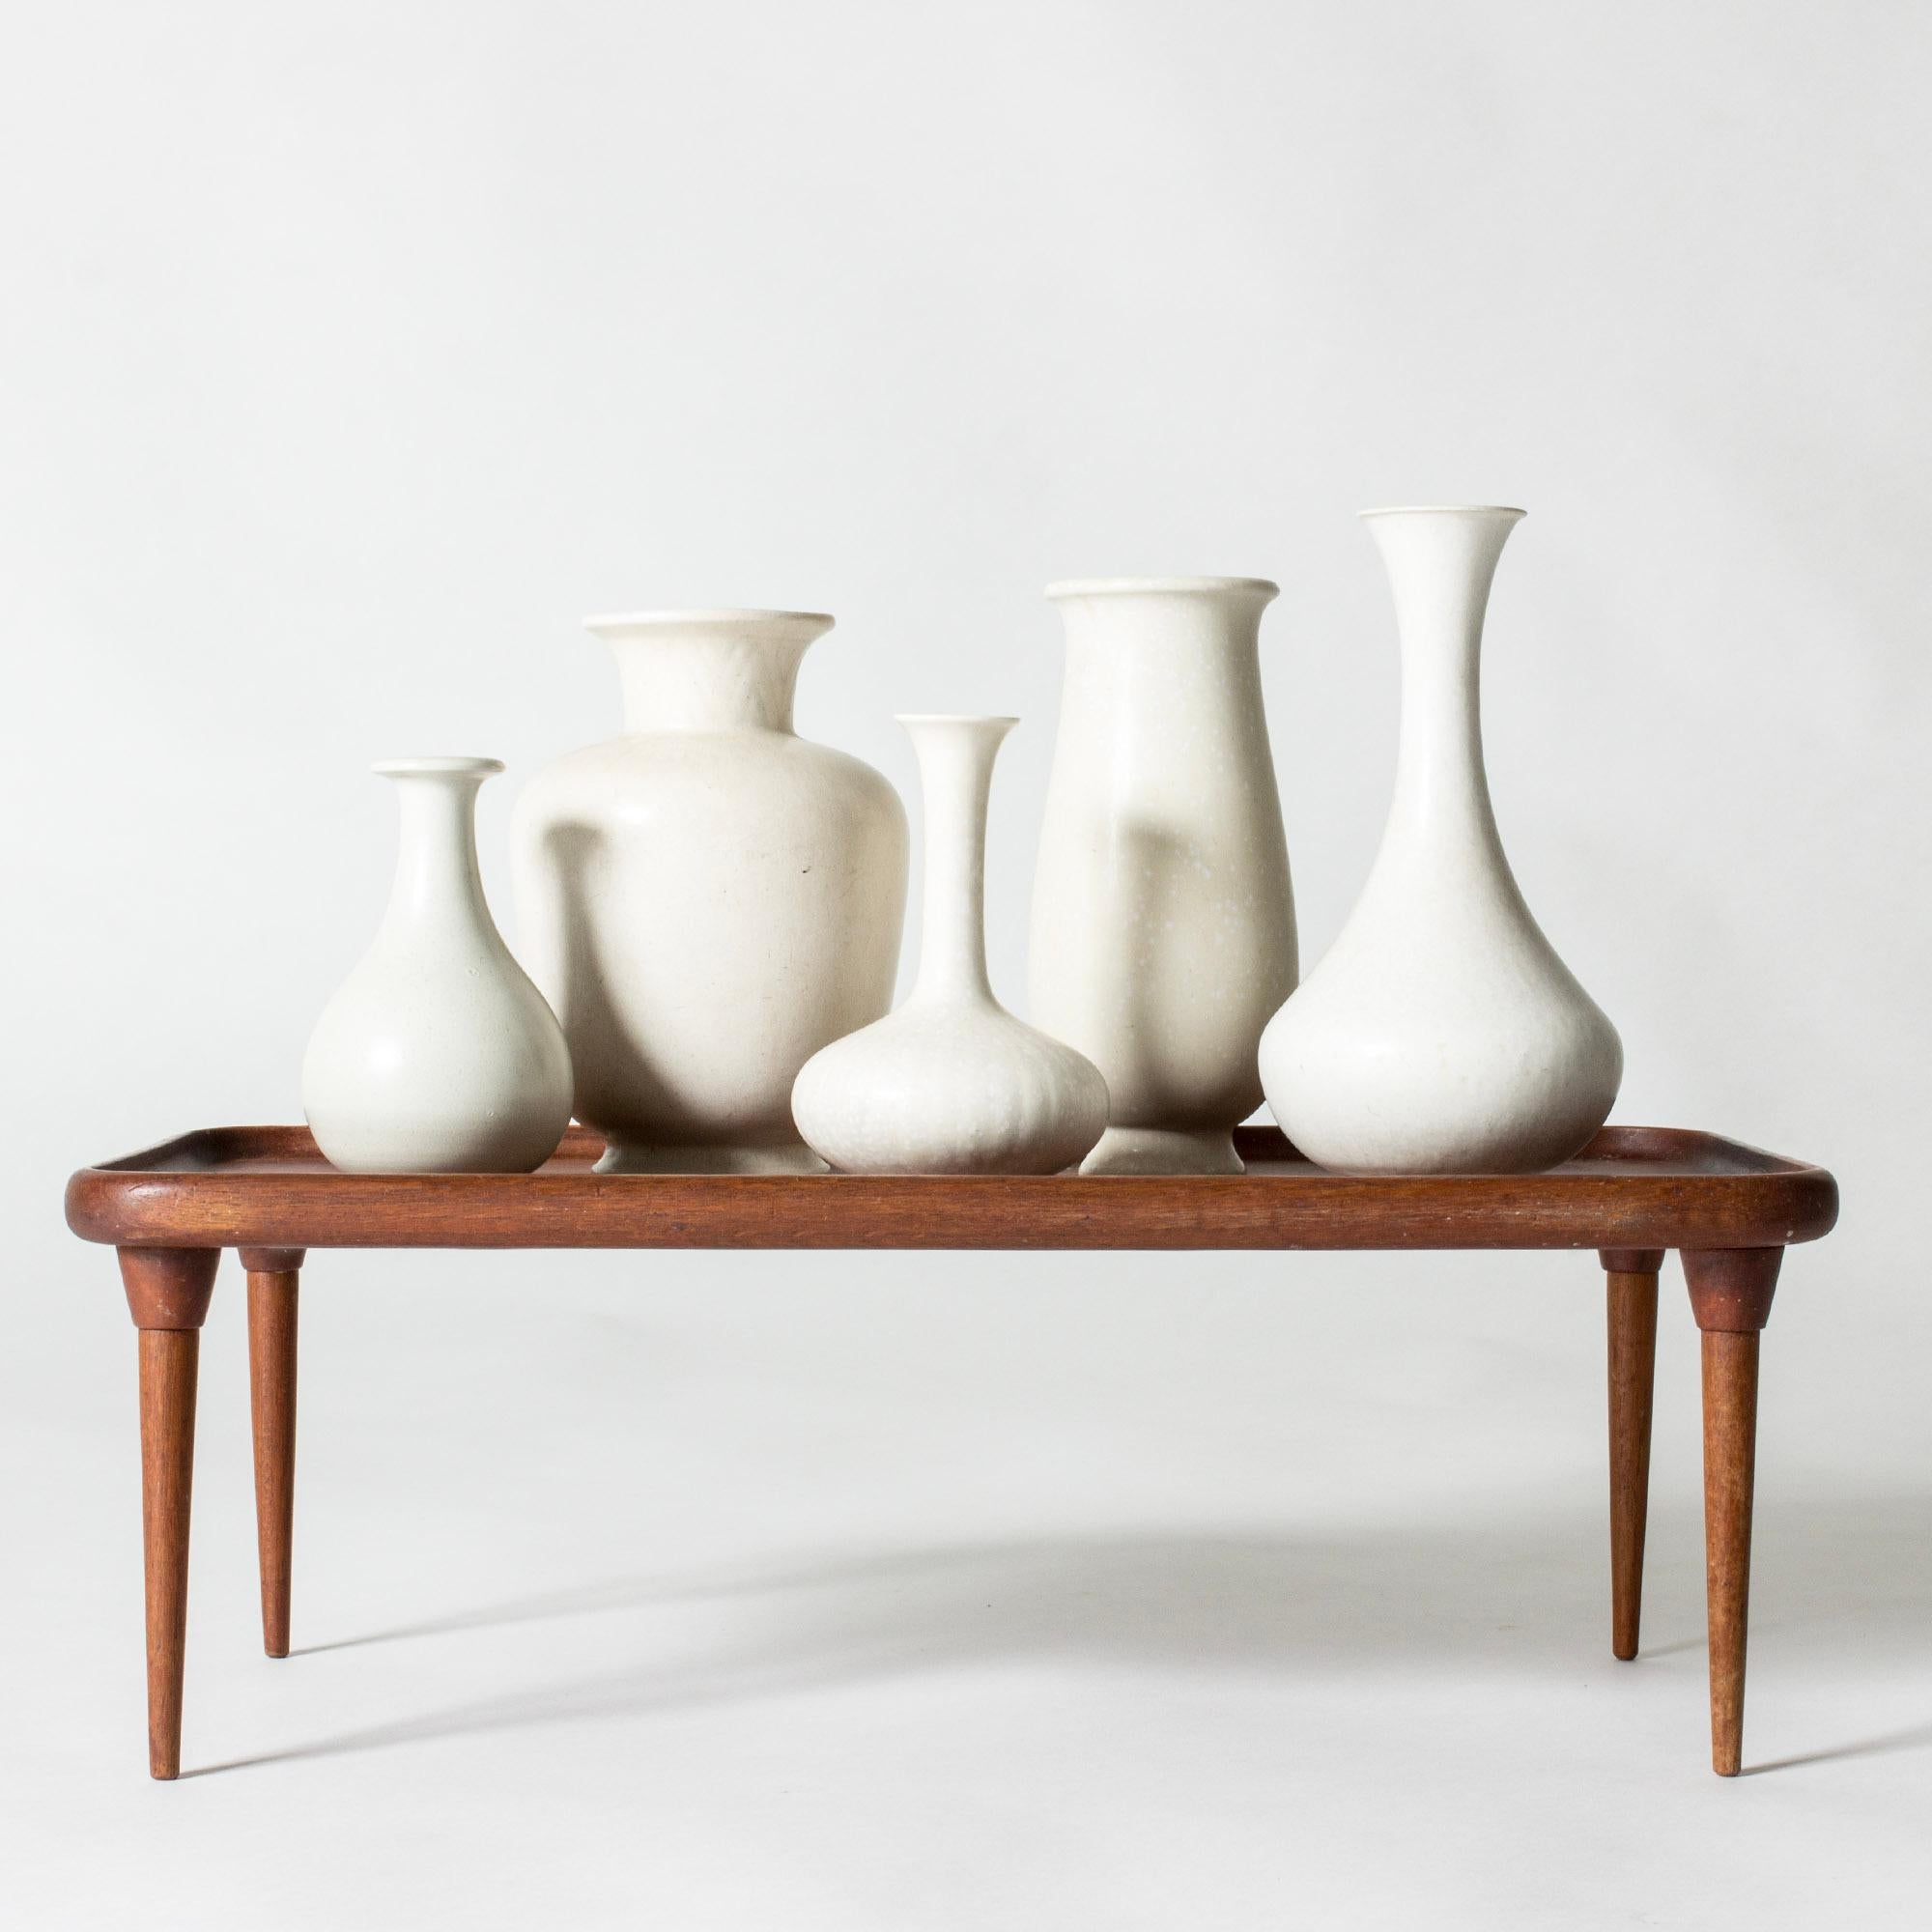 Satz von fünf Vasen aus Steinzeug von Gunnar Nylund in verschiedenen eleganten, geschwungenen Formen und Größen. Alle sind schön eierschalenweiß glasiert.

Höhe 14/15,5/19/20/22,5 cm, Durchmesser 8-13,4 cm.

Gunnar Nylund war einer der